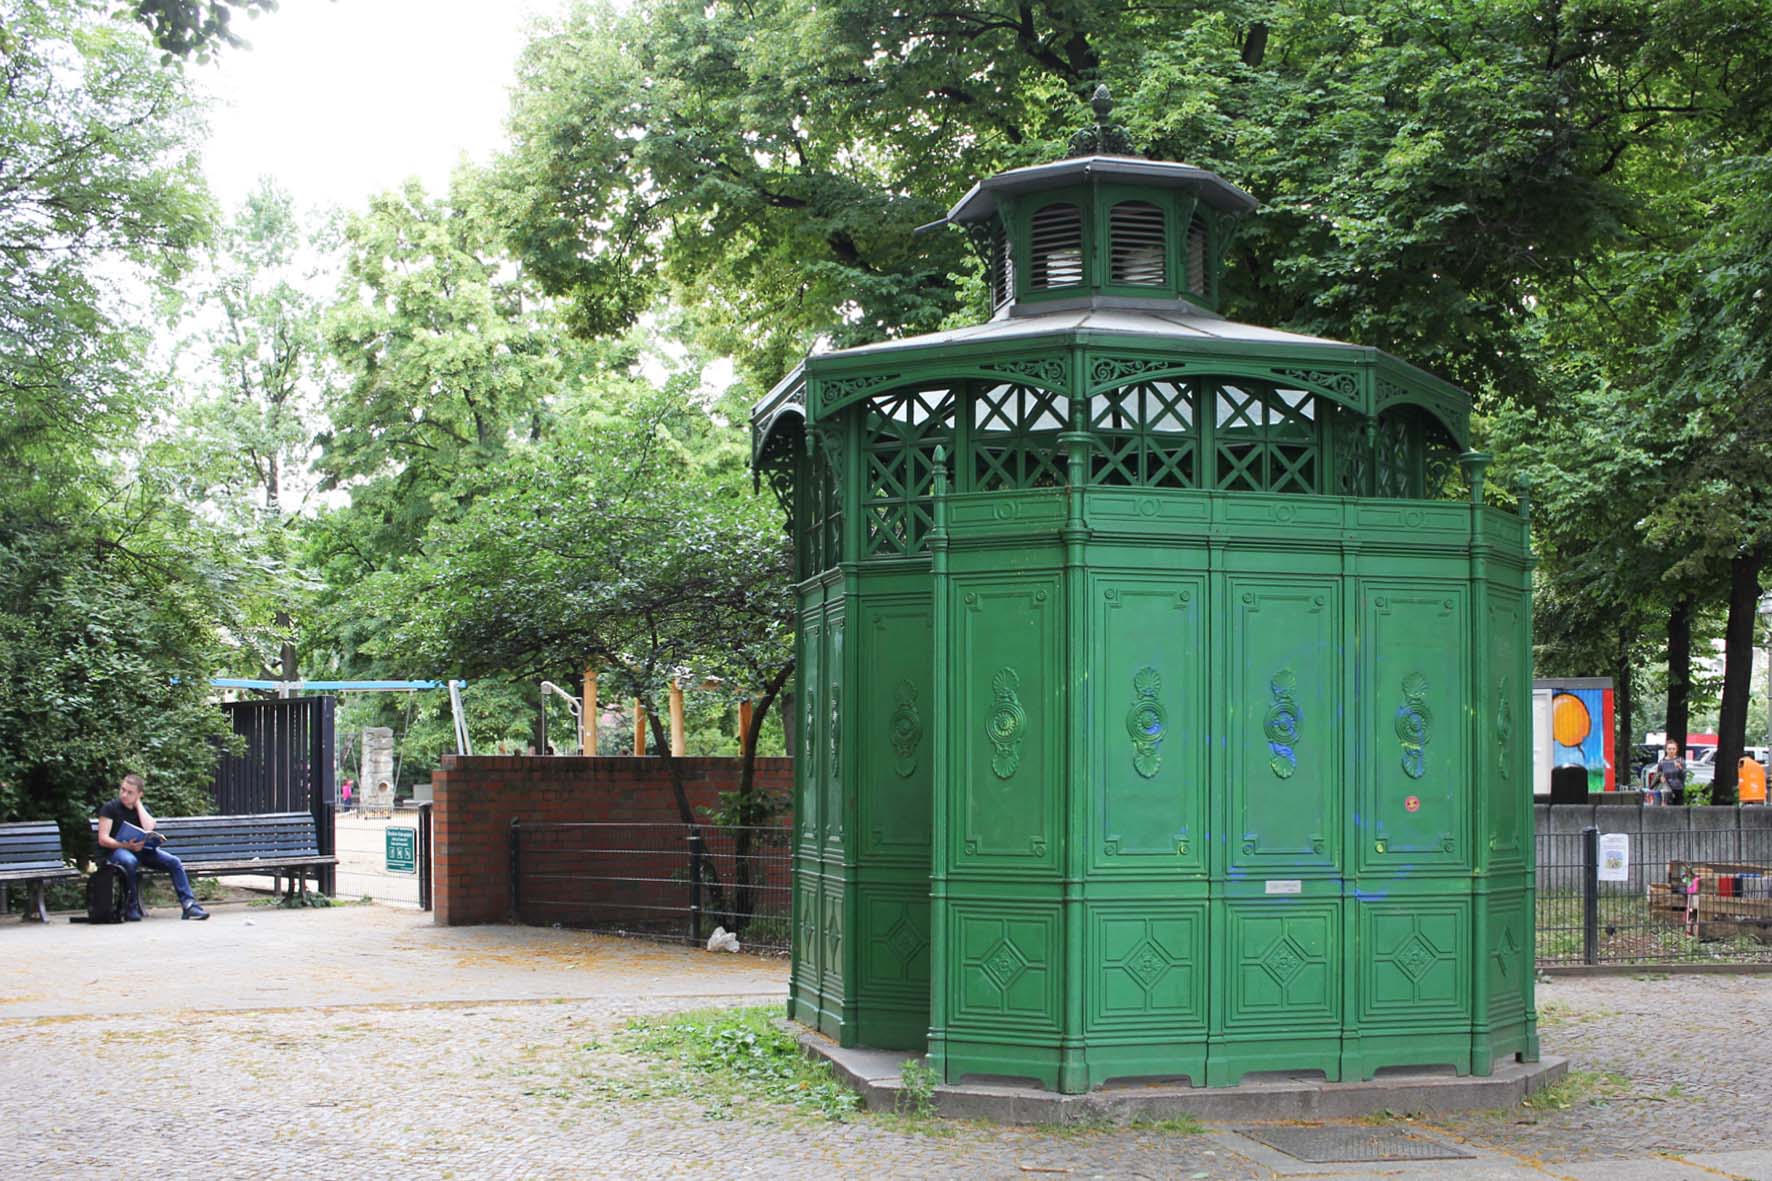 Café Achteck - Stephanplatz - ein Exemplar von Berlin's klassischen grün-lackierten gusseisernen Bedürfnisanstalten aus dem 19. Jahrhundert